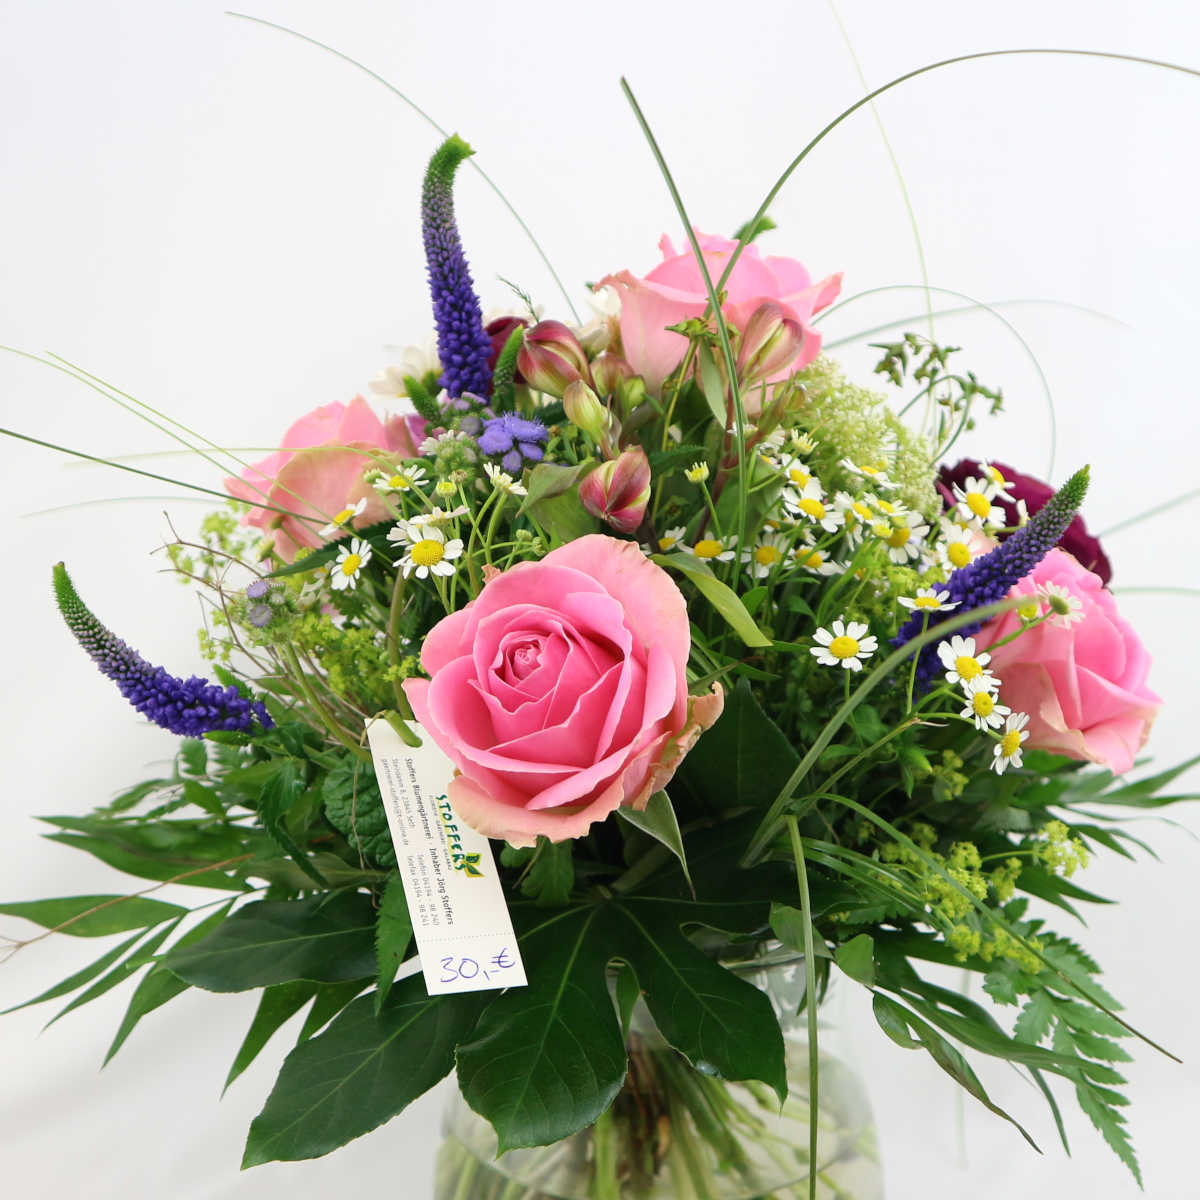 Dieser sommerliche, farbenfrohe Blumenstrauß besteht aus Rosen, Veronika, Kamille und den Blüten der Inkalilie.